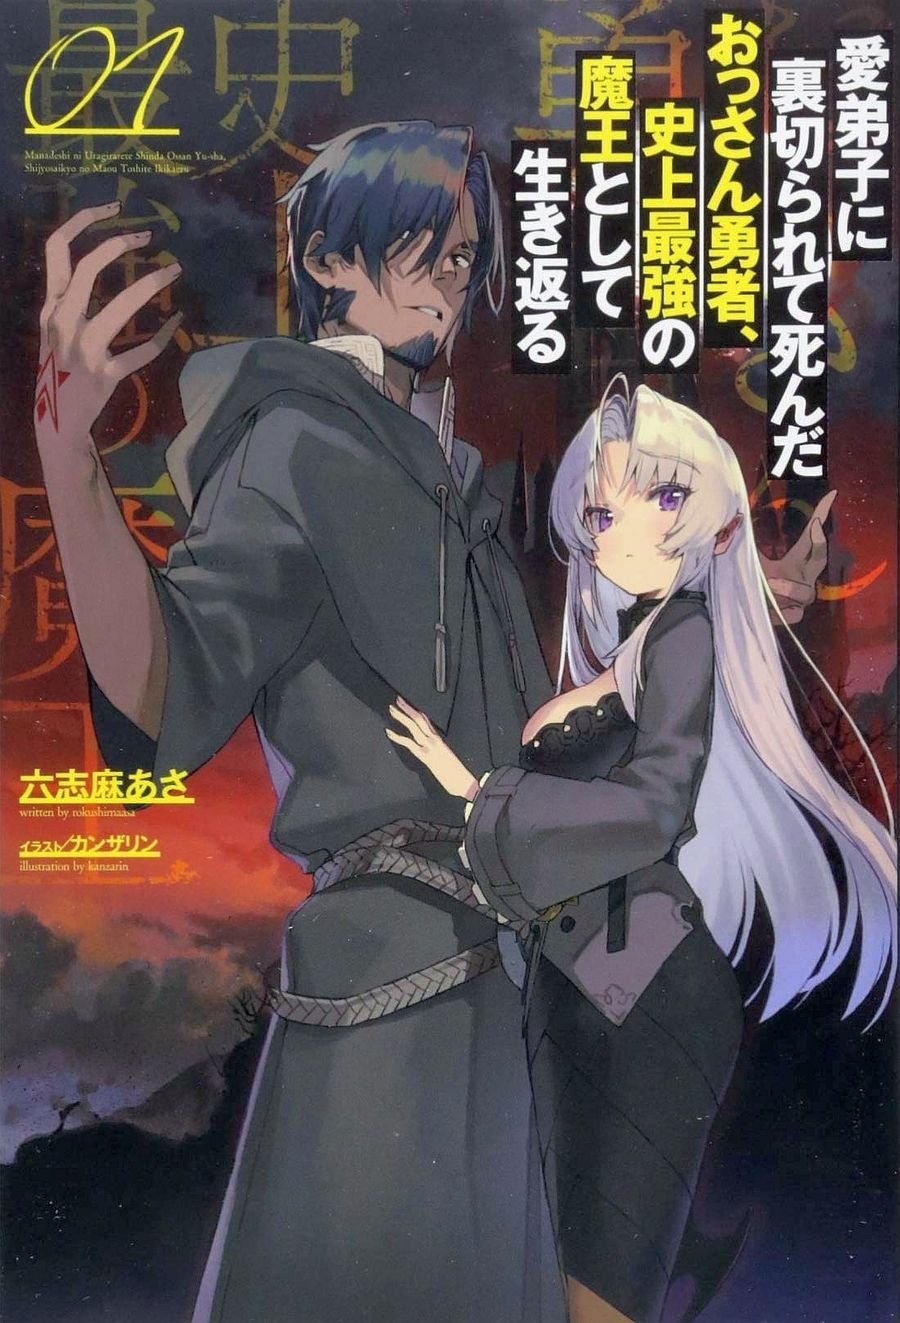 Isekai Shoukan wa Nidome desu  Light Novel 